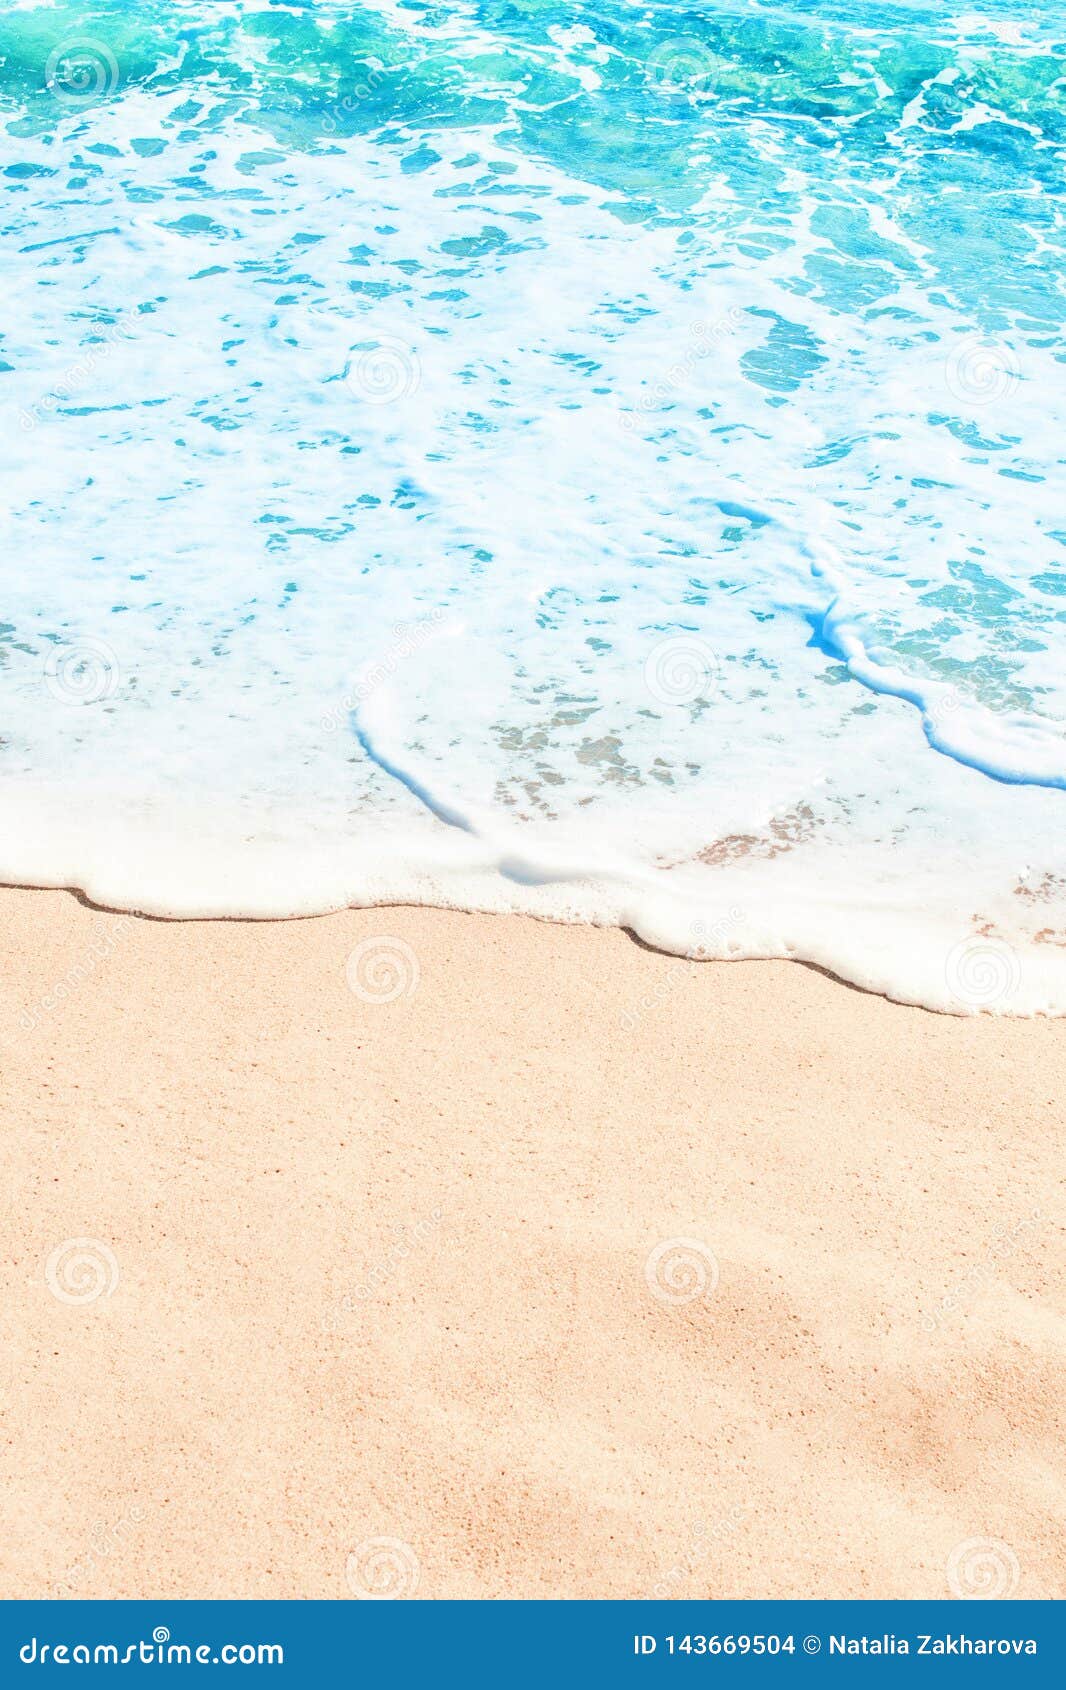 Blue Ocean Wave on Sandy Beach. Summer Day and Sand Beach ...